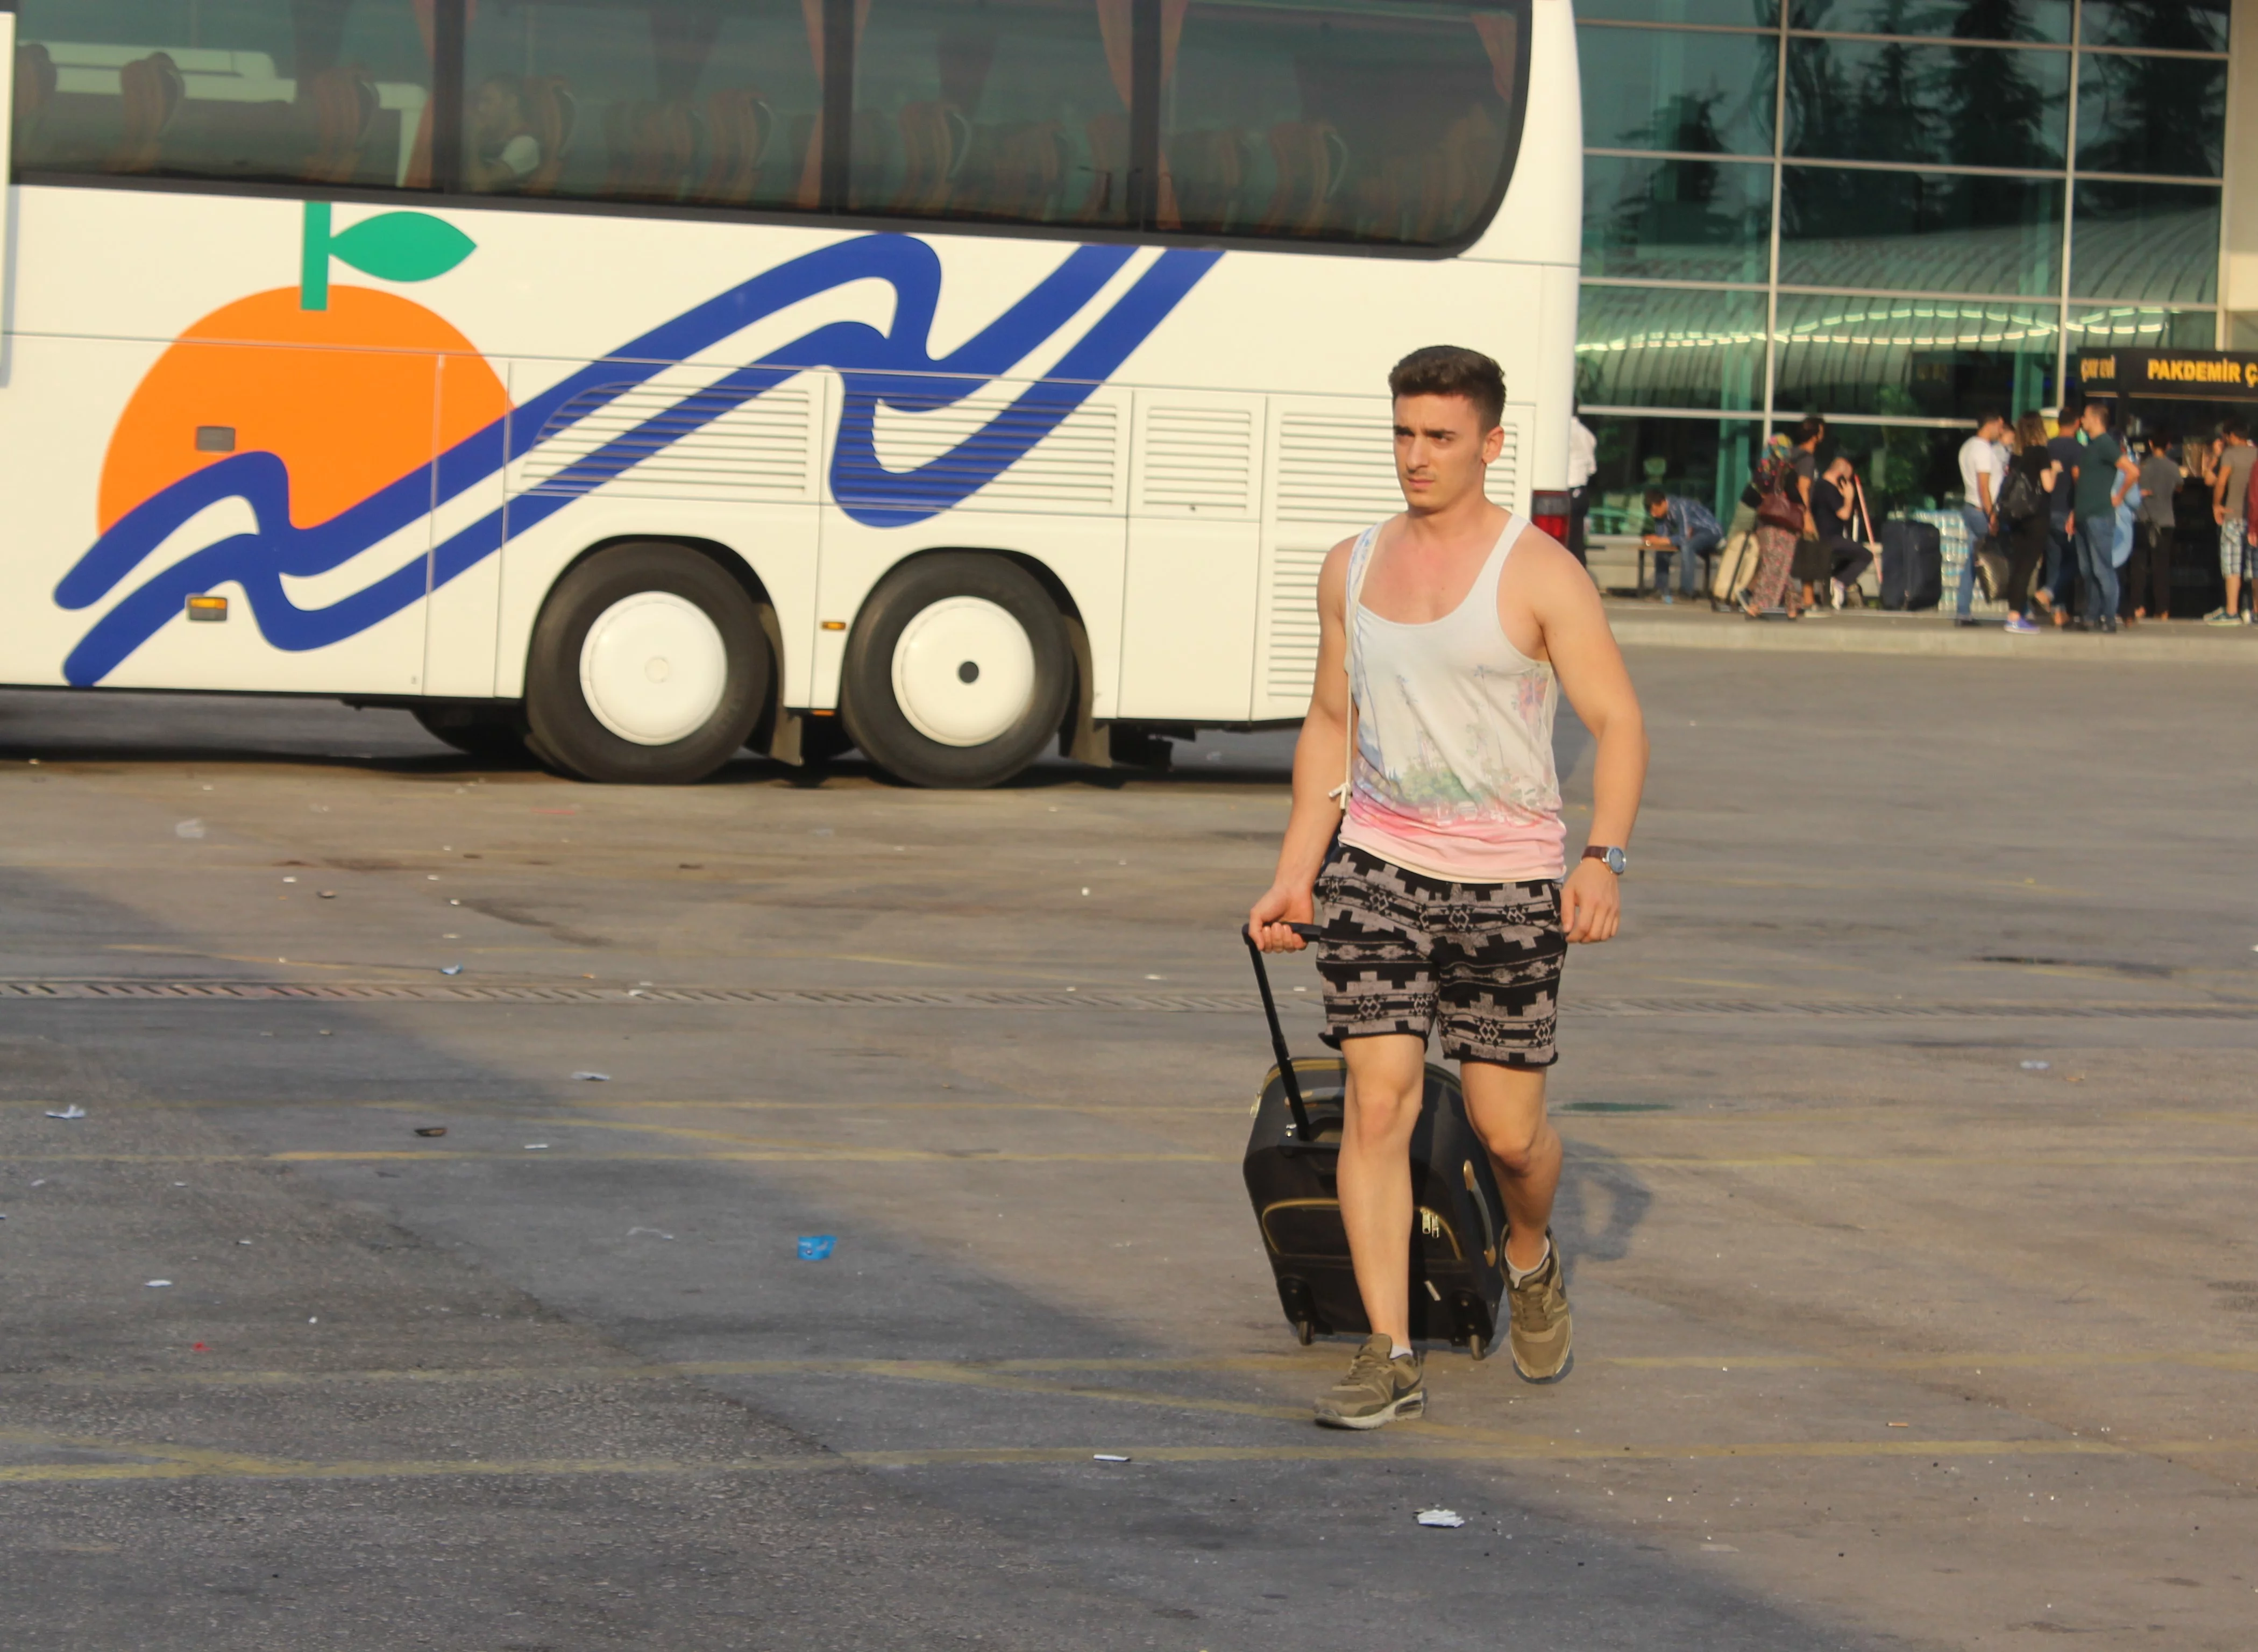 Bayram tatilini memleketinde geçirmek isteyenler otobüs terminaline akın etti